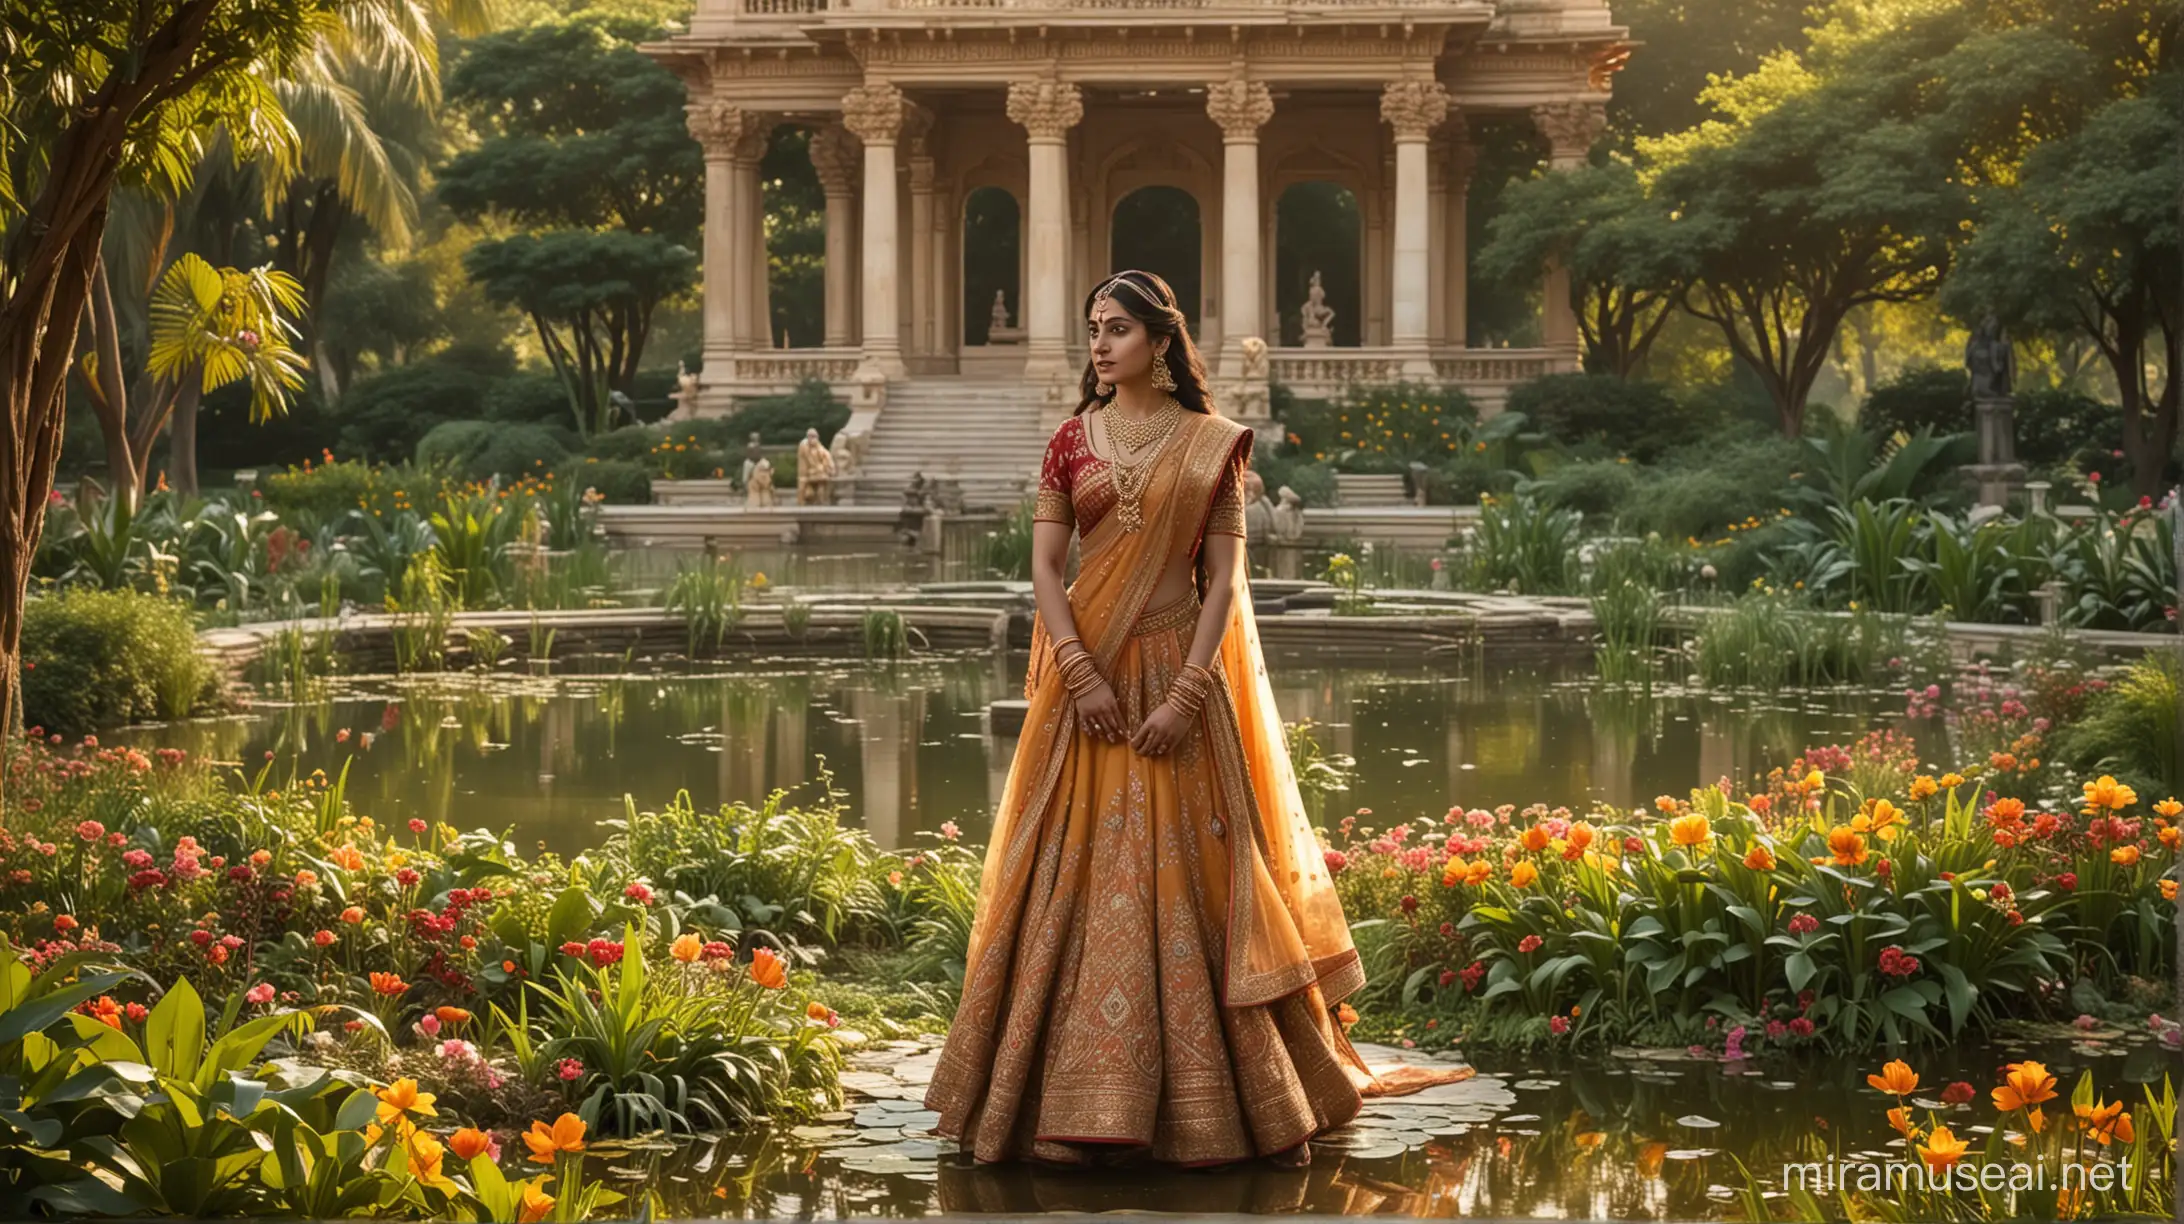 Lord Krishna and Princess Draupadi in a Lush Garden